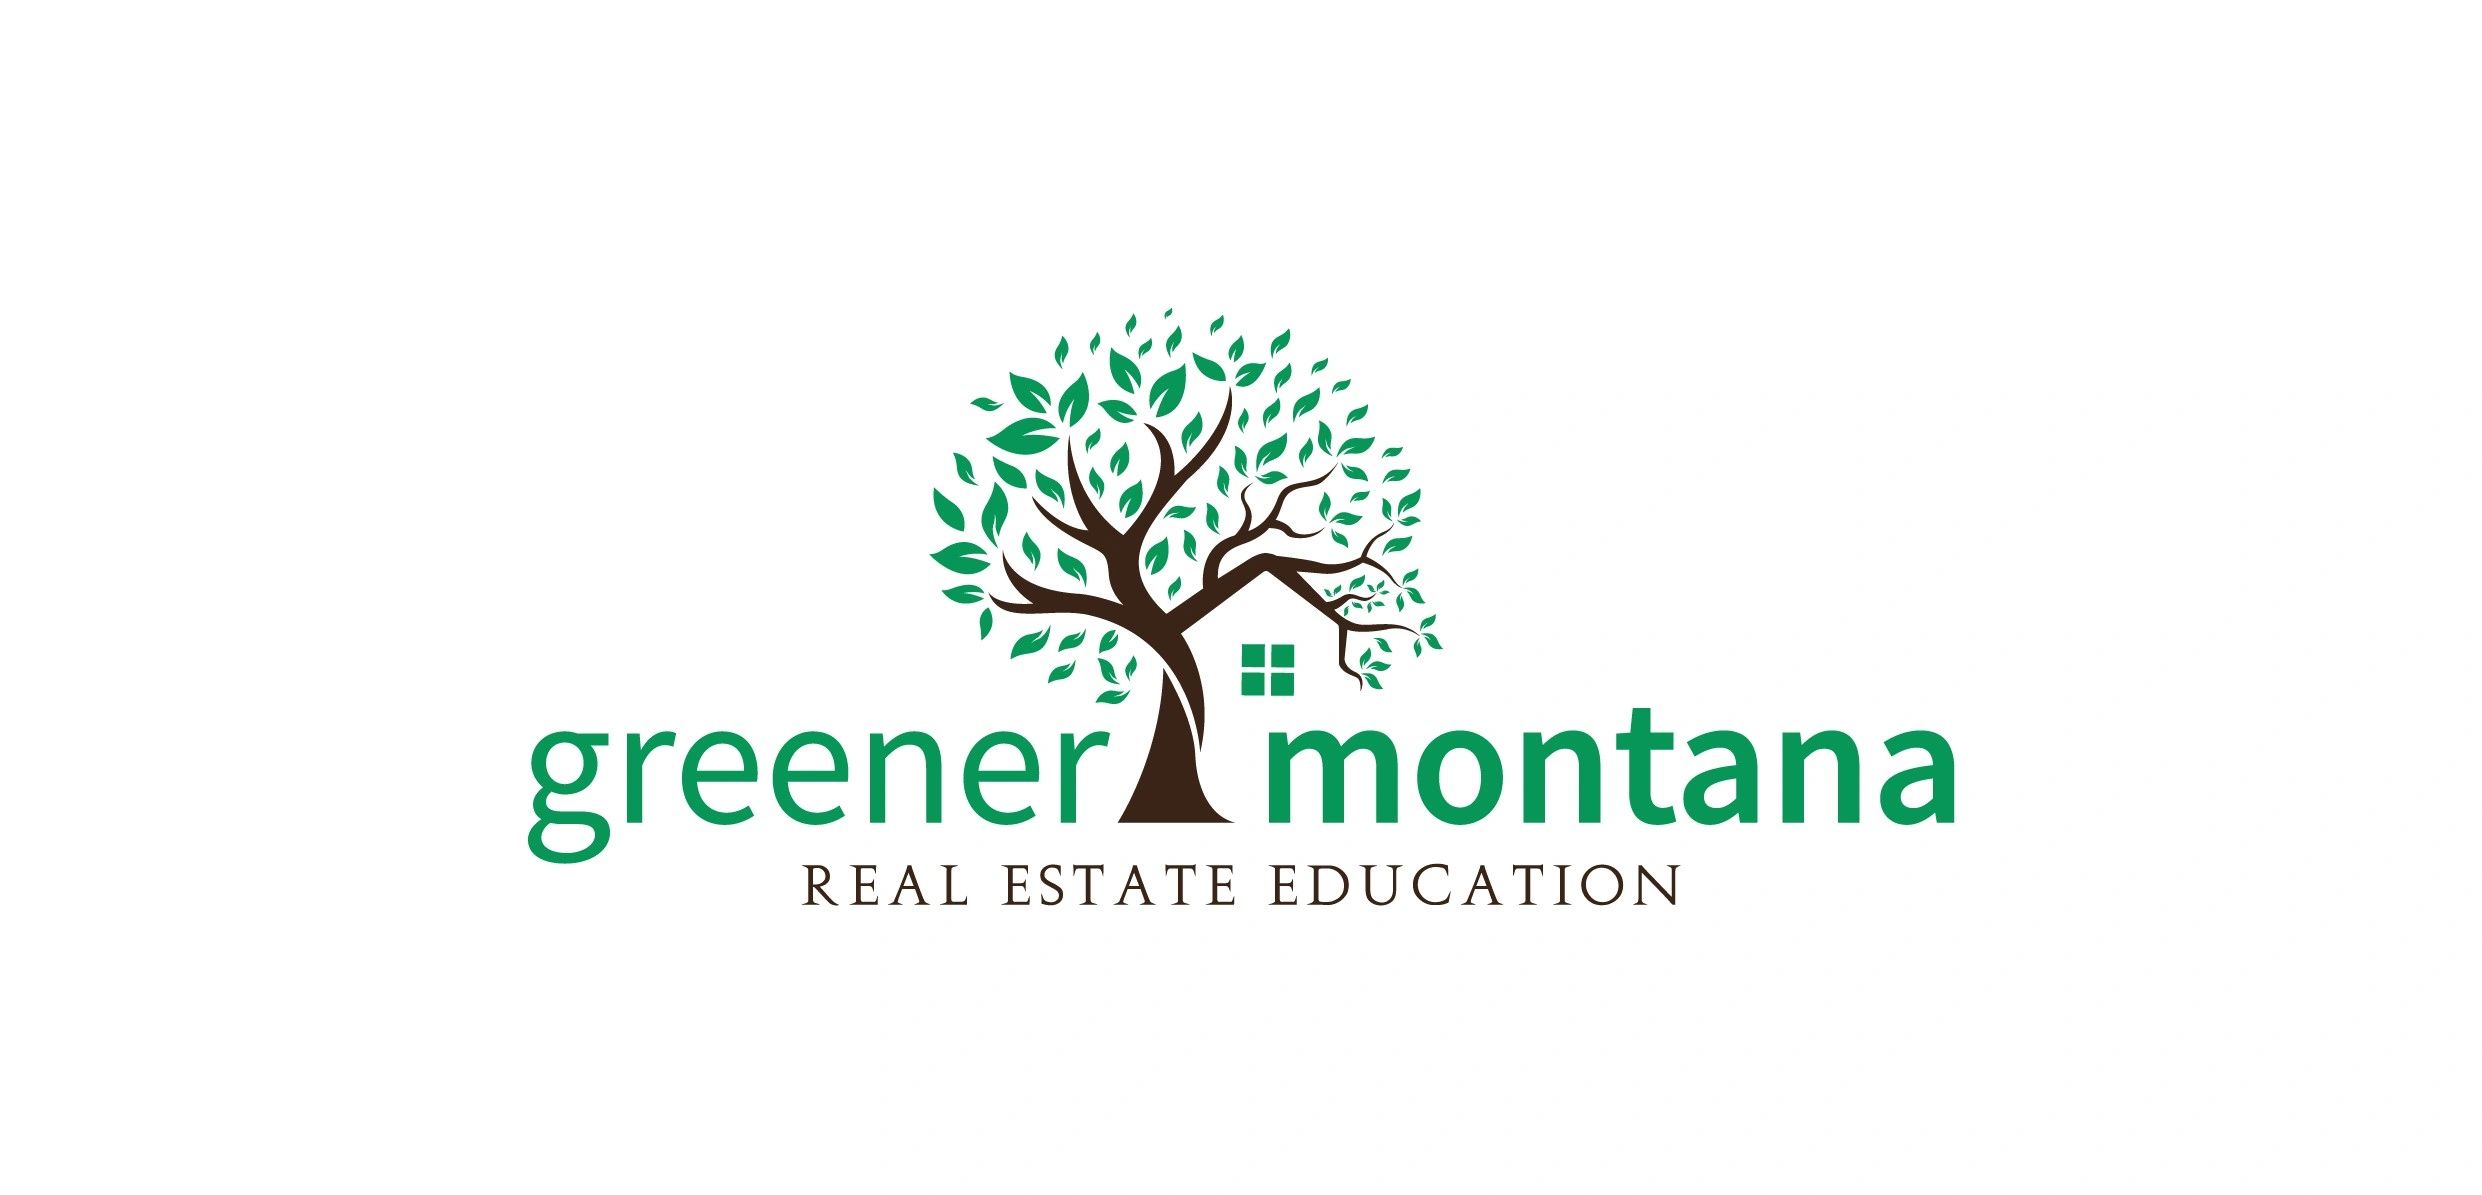 Greener Montana Real Estate Education 